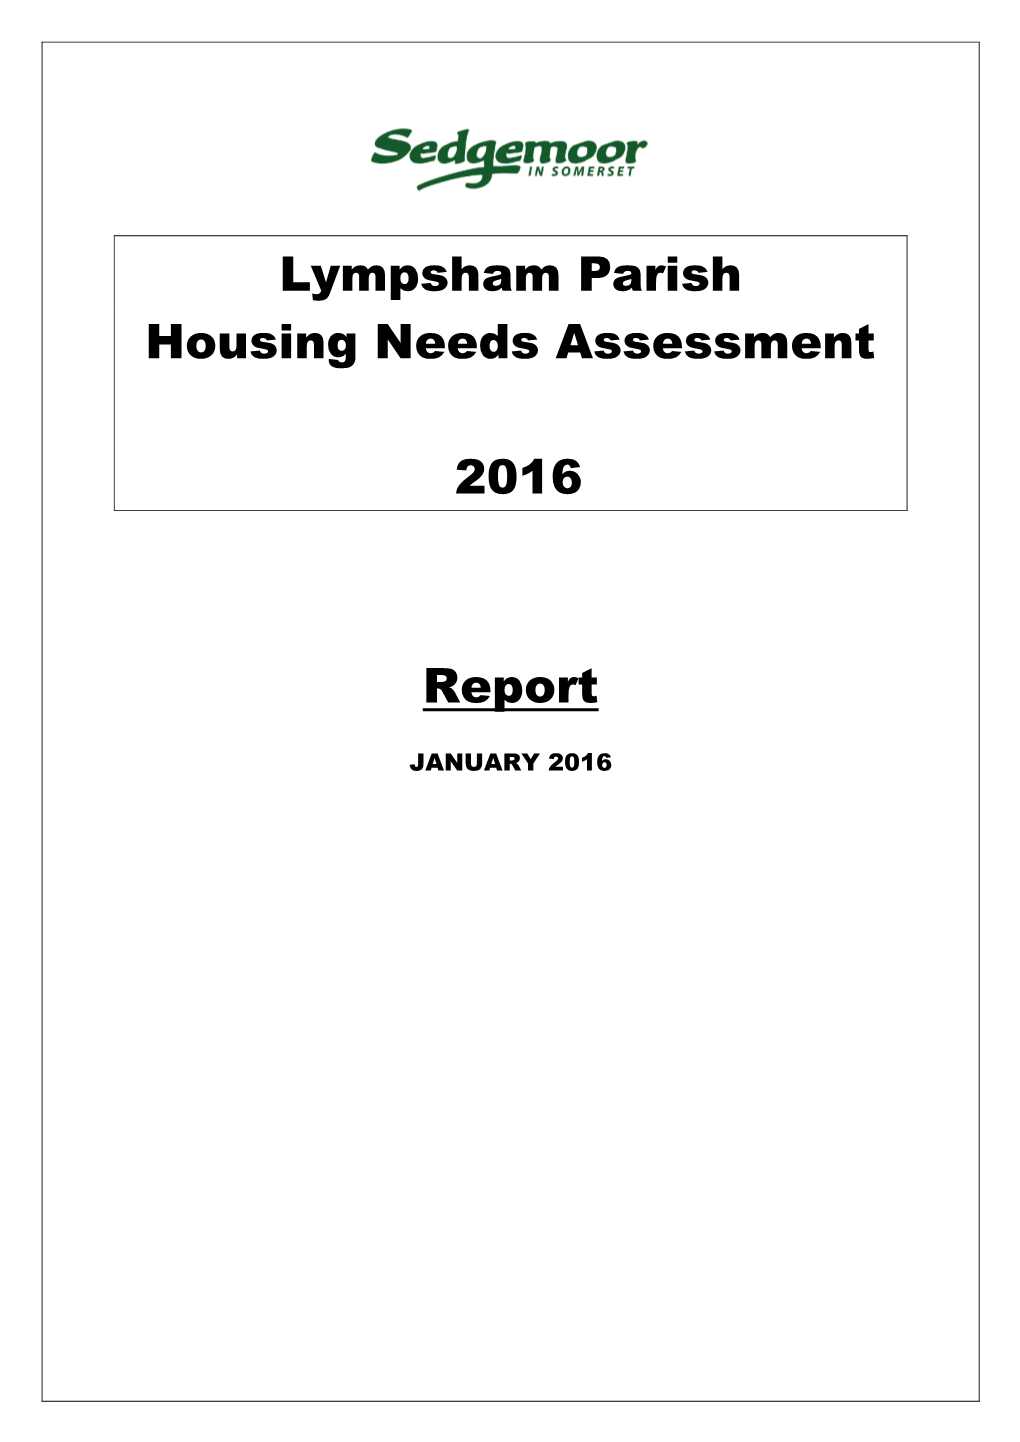 Lympsham Parish Housing Needs Assessment 2016 Report